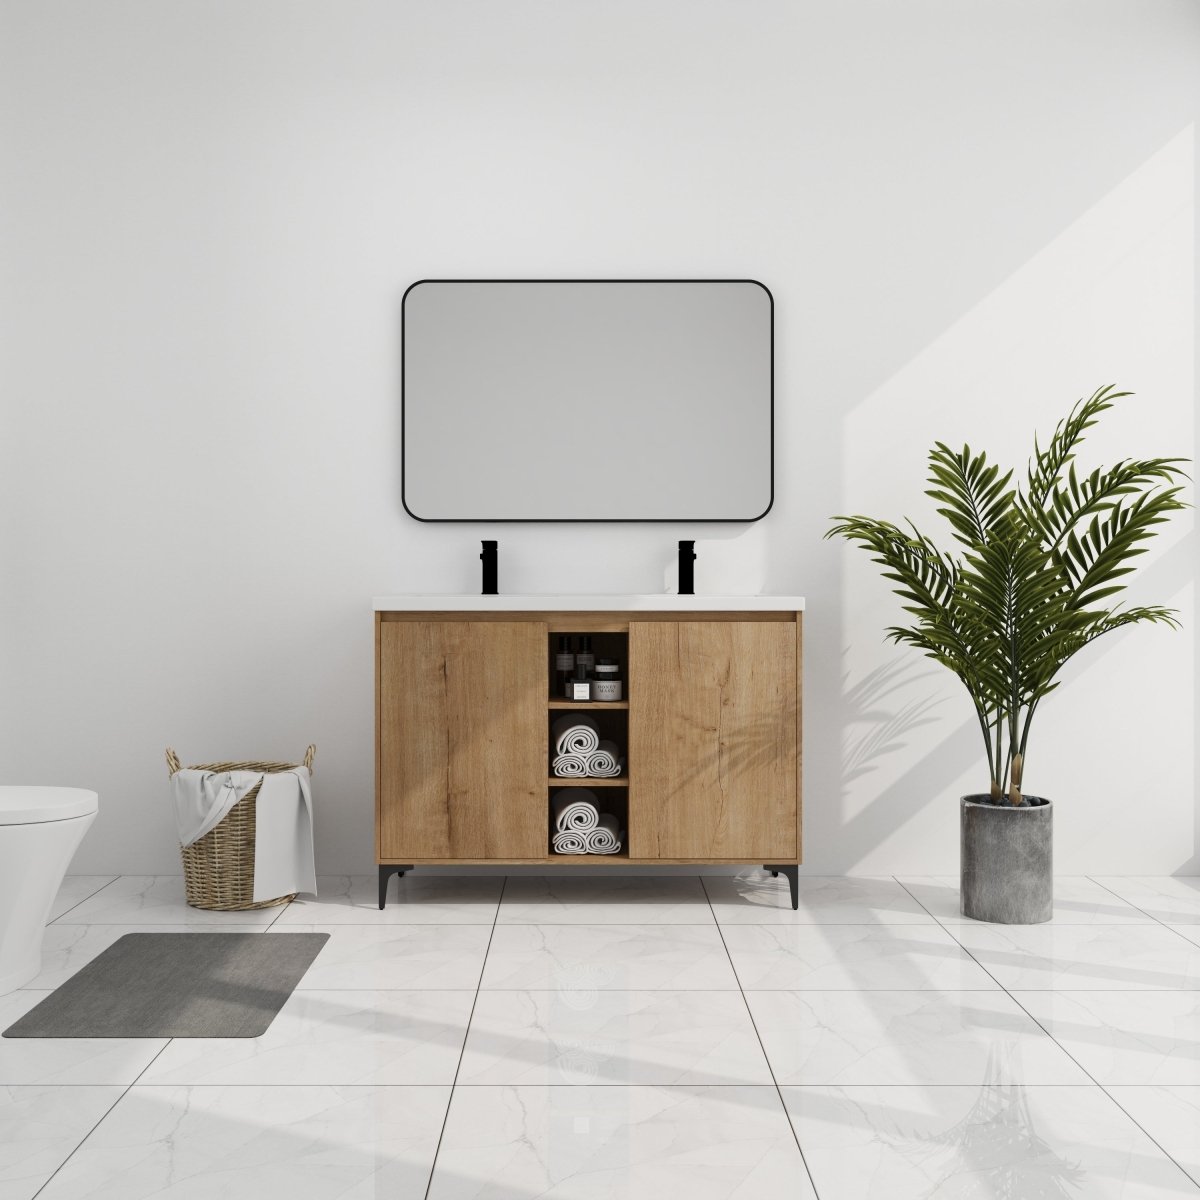 ExBrite 48" Freestanding Bathroom Vanity With Double Sink, Soft Closing Door Hinge